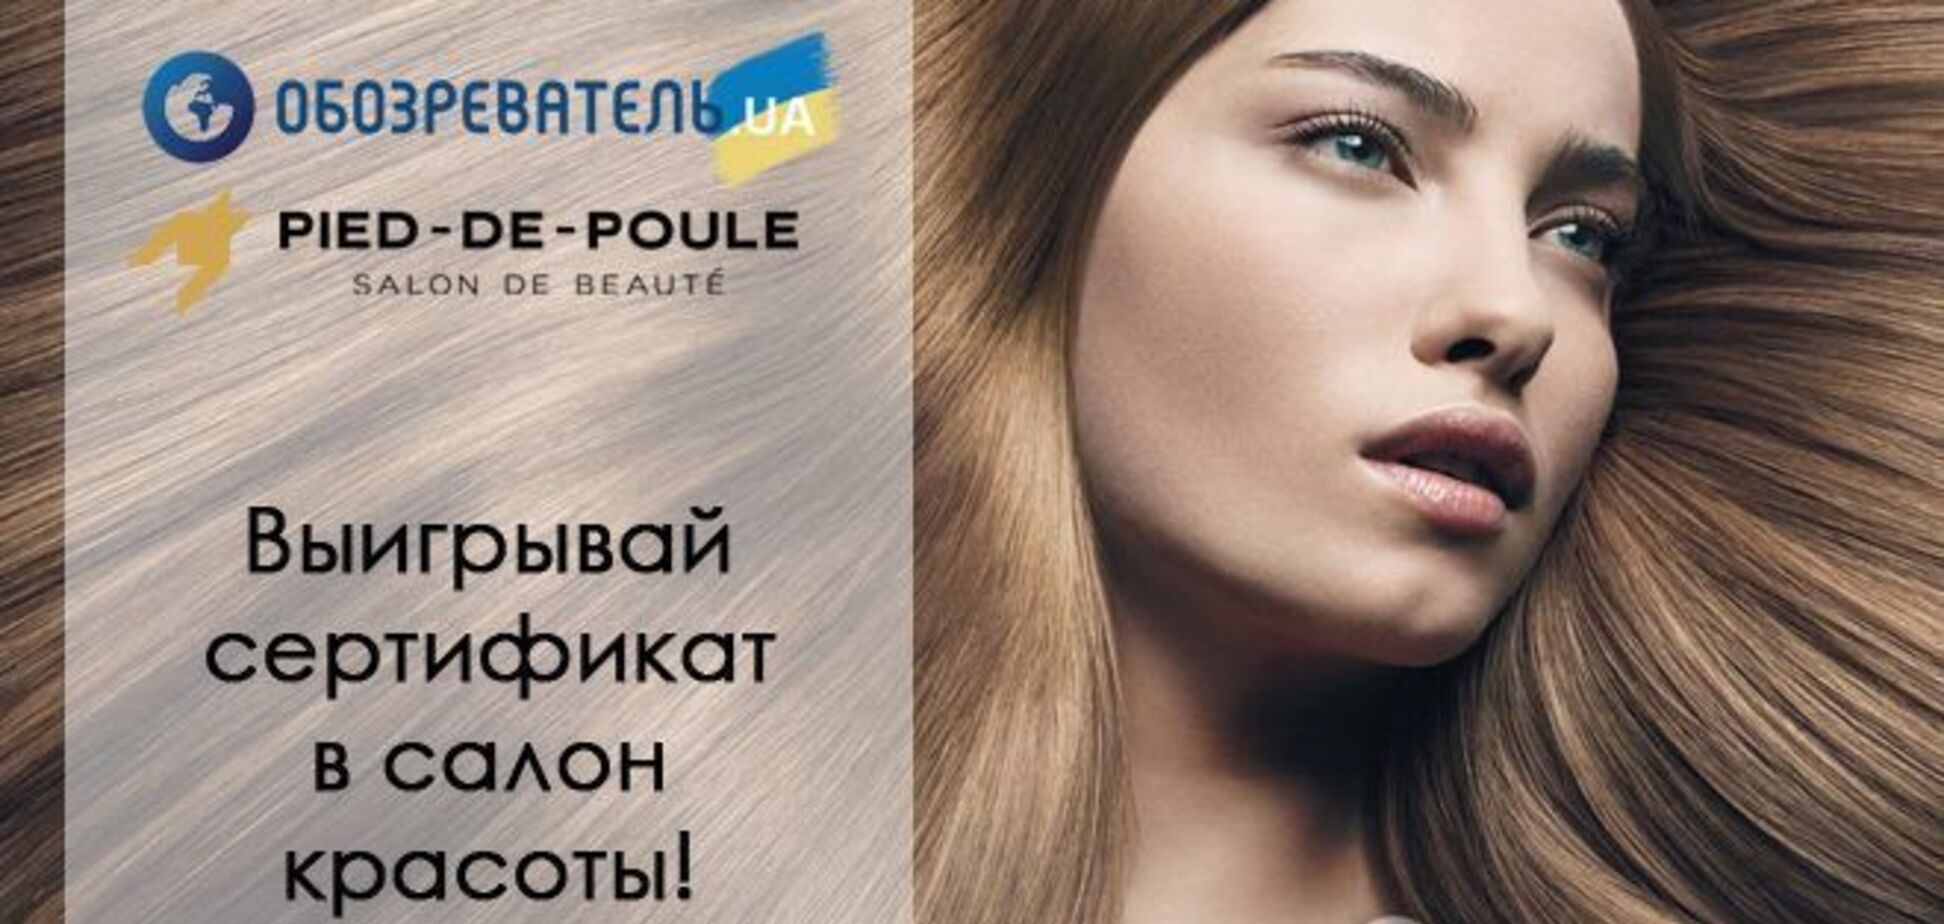 Красивые волосы - это просто! Принимай участие в конкурсе и посети лучший салон красоты Киева!